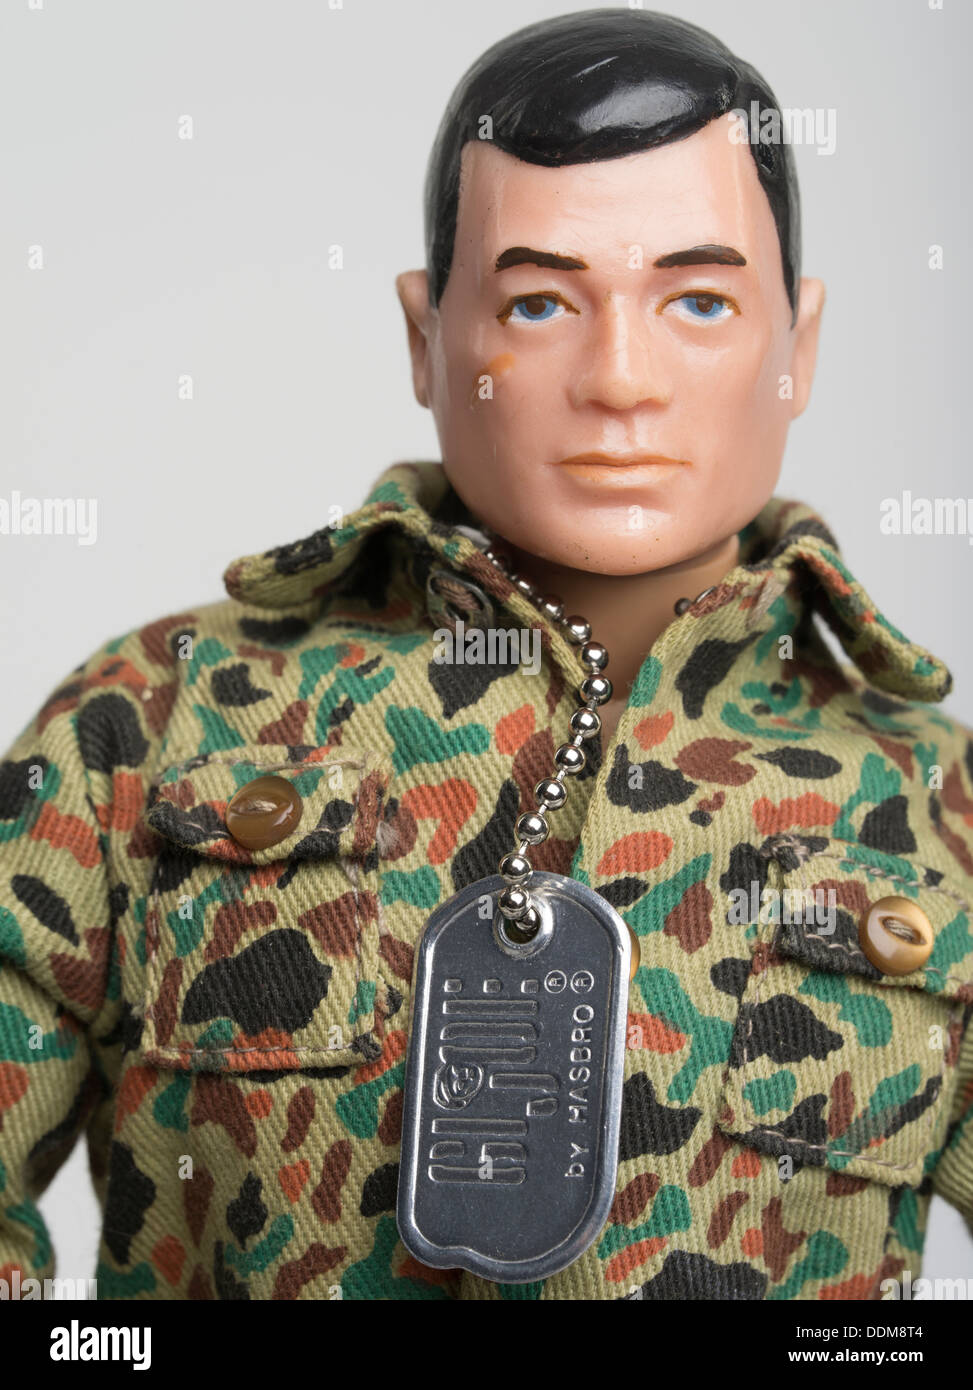 GI Joe figura de por parte de la empresa de juguetes Hasbro. del ejército de las fuerzas armadas estadounidenses G.I Fotografía de stock Alamy